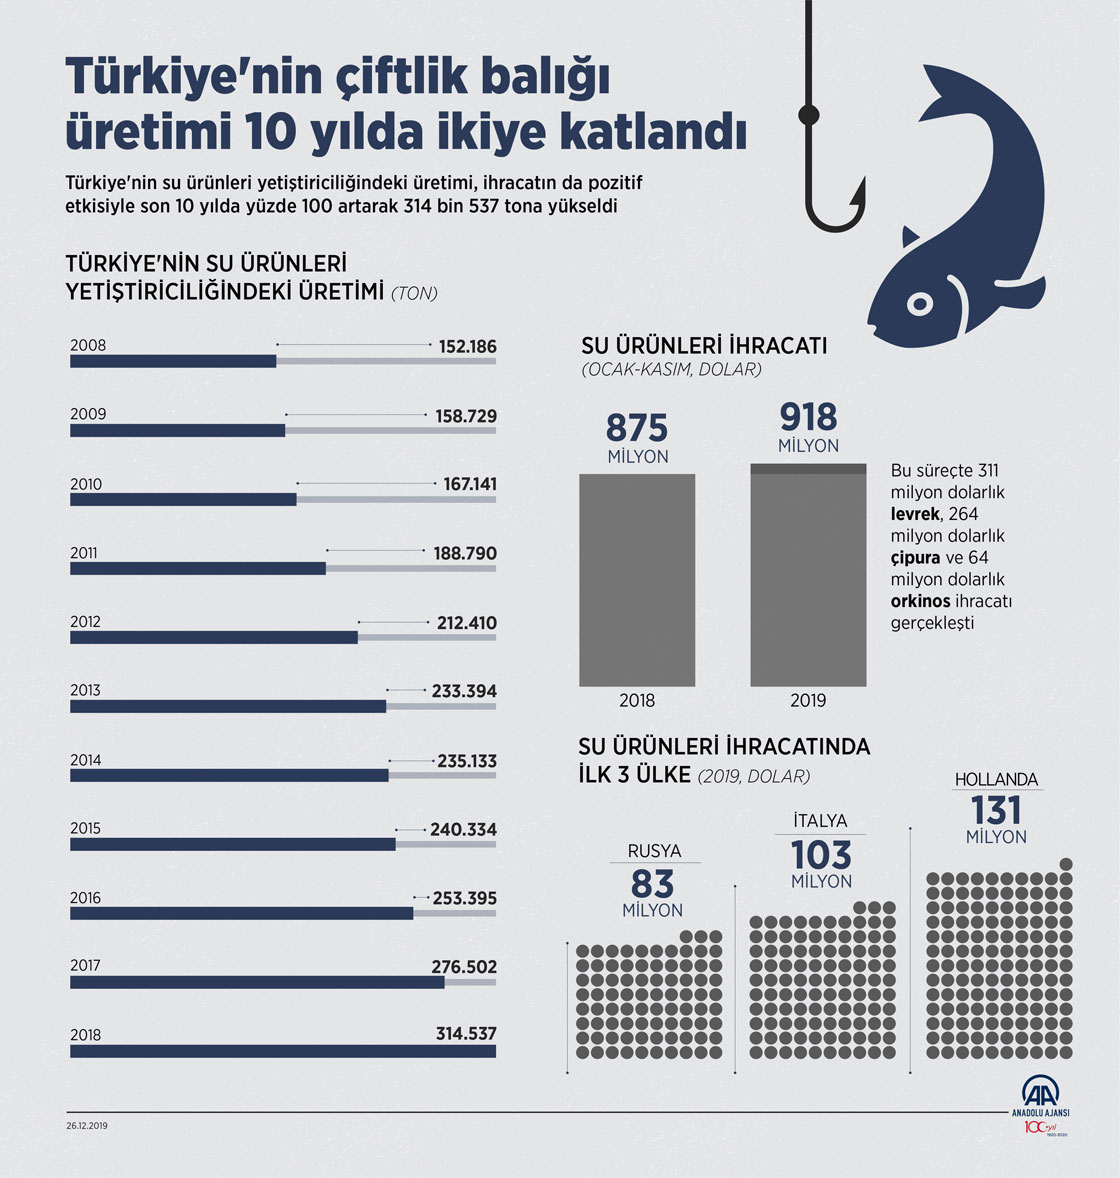 Türkiye'nin çiftlik balığı üretimi 10 yılda ikiye katlandı